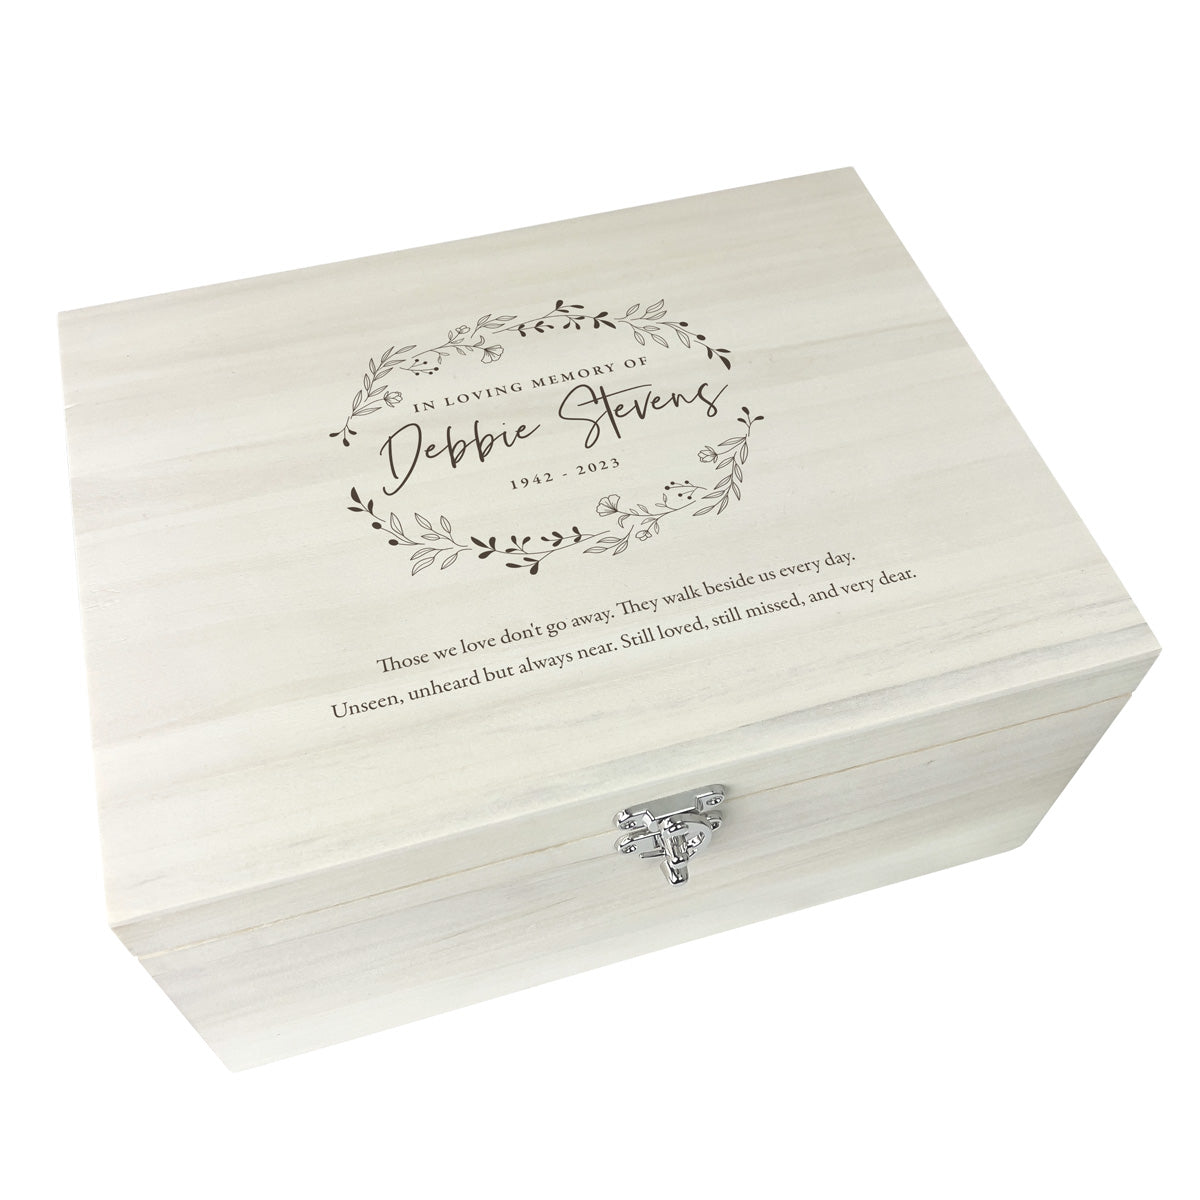 Personalised Luxury 34cm Wooden Wreath Keepsake Memory Box